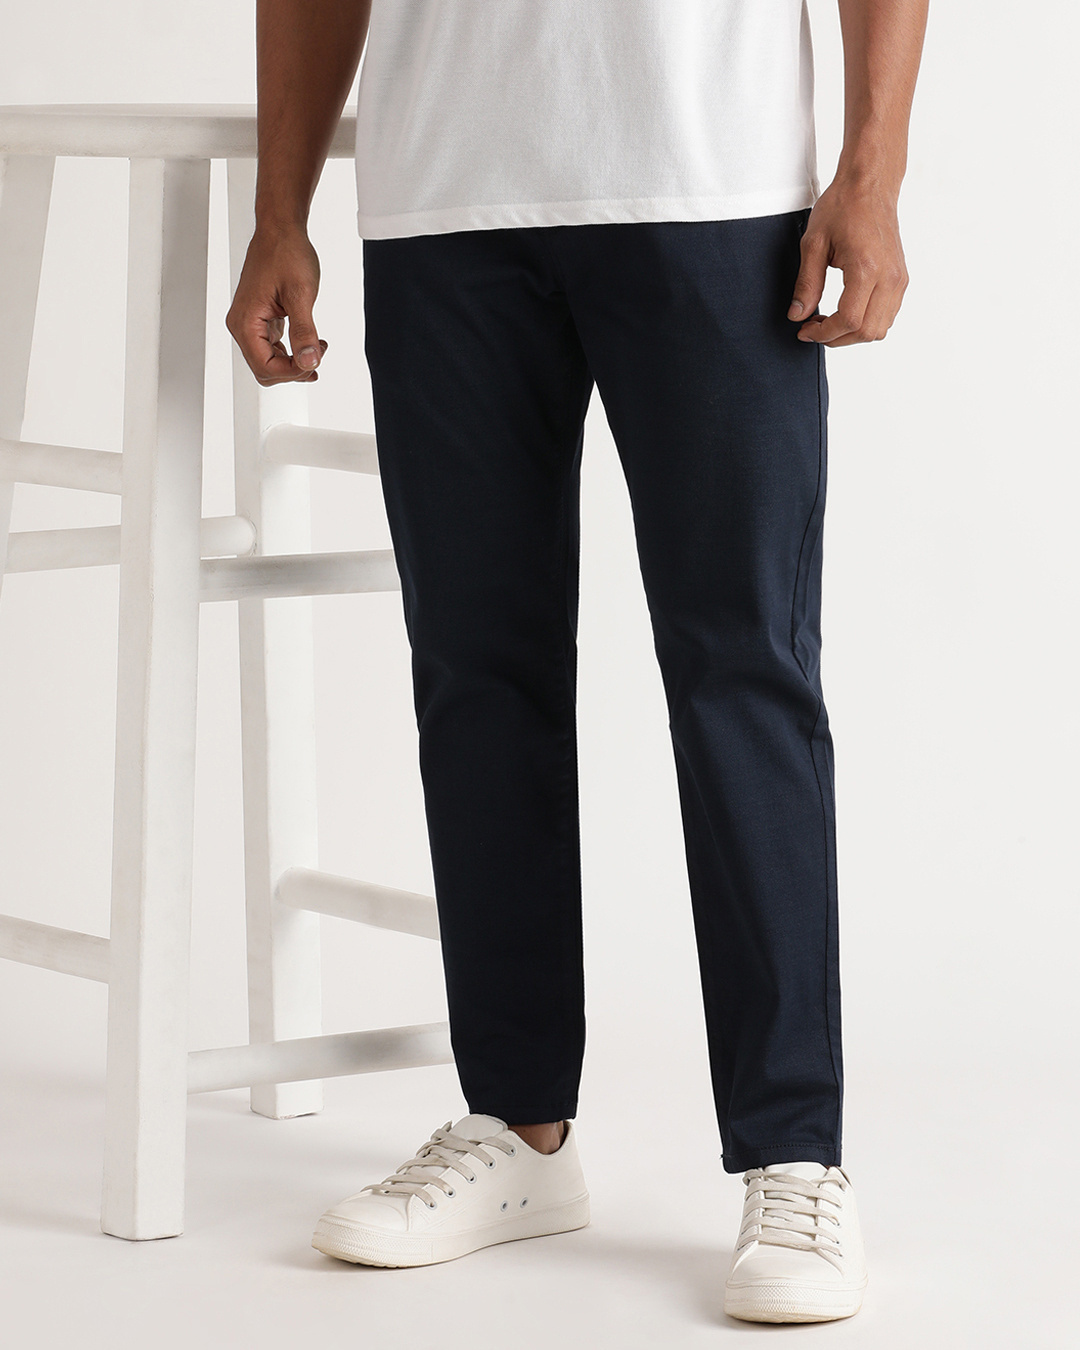 Buy Men's Blue Slim Fit Trousers Online at Bewakoof